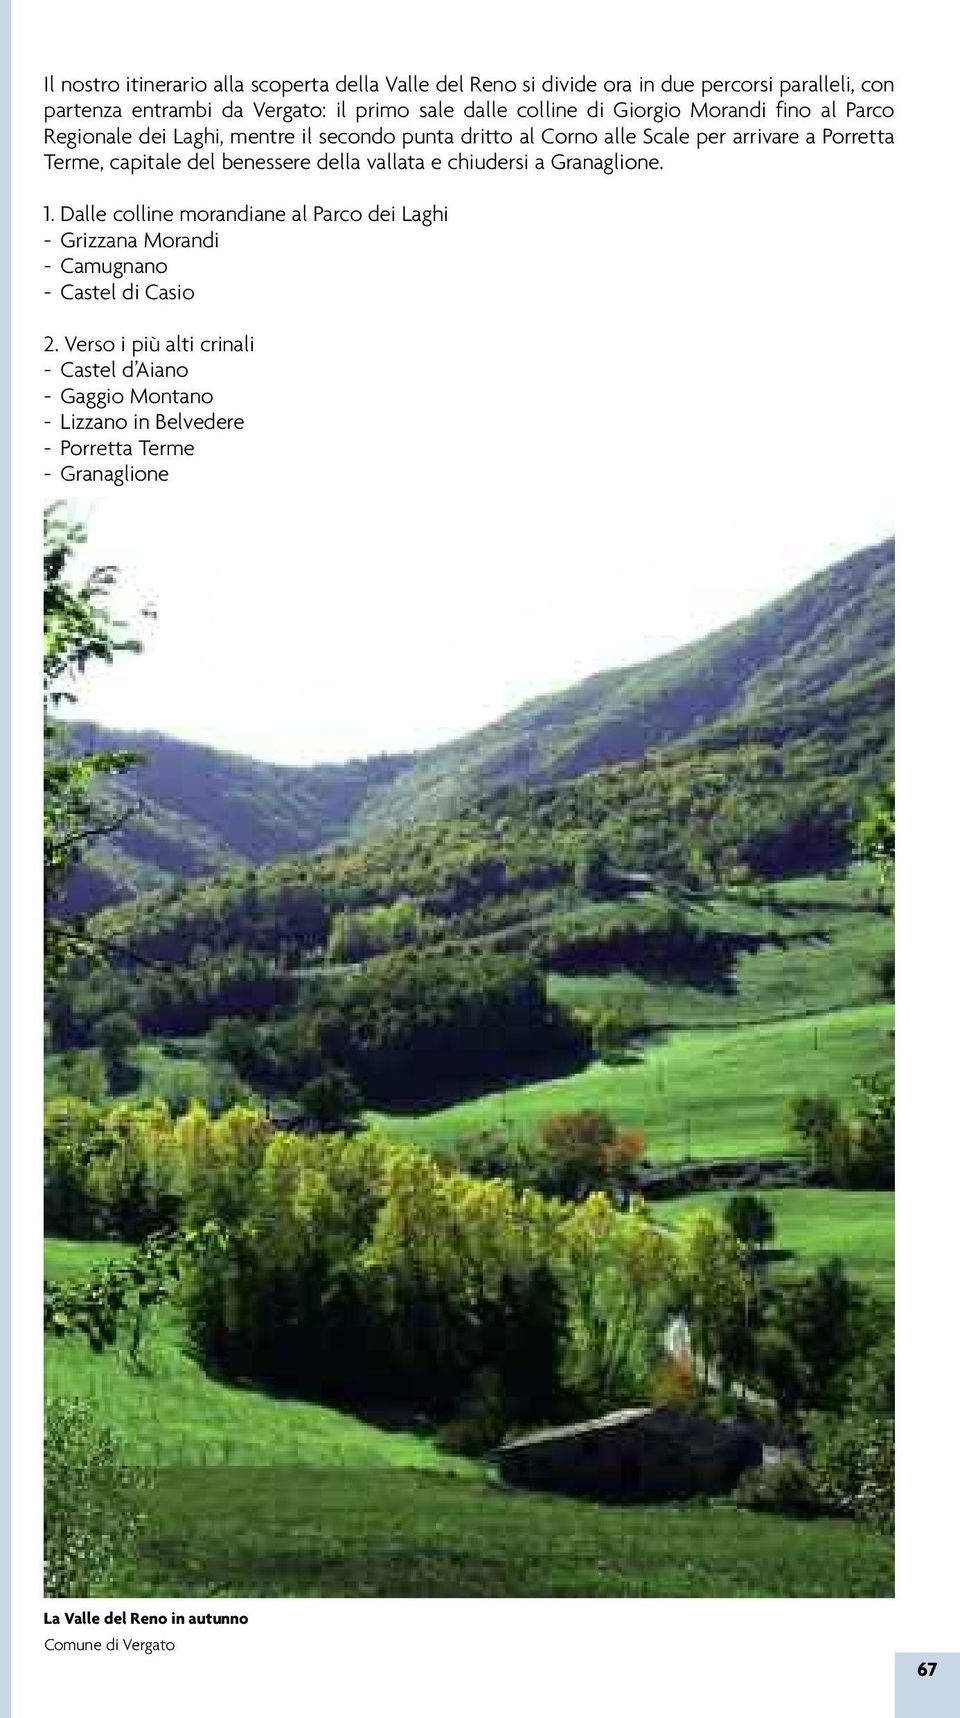 del benessere della vallata e chiudersi a Granaglione. 1. Dalle colline morandiane al Parco dei Laghi - Grizzana Morandi - Camugnano - Castel di Casio 2.